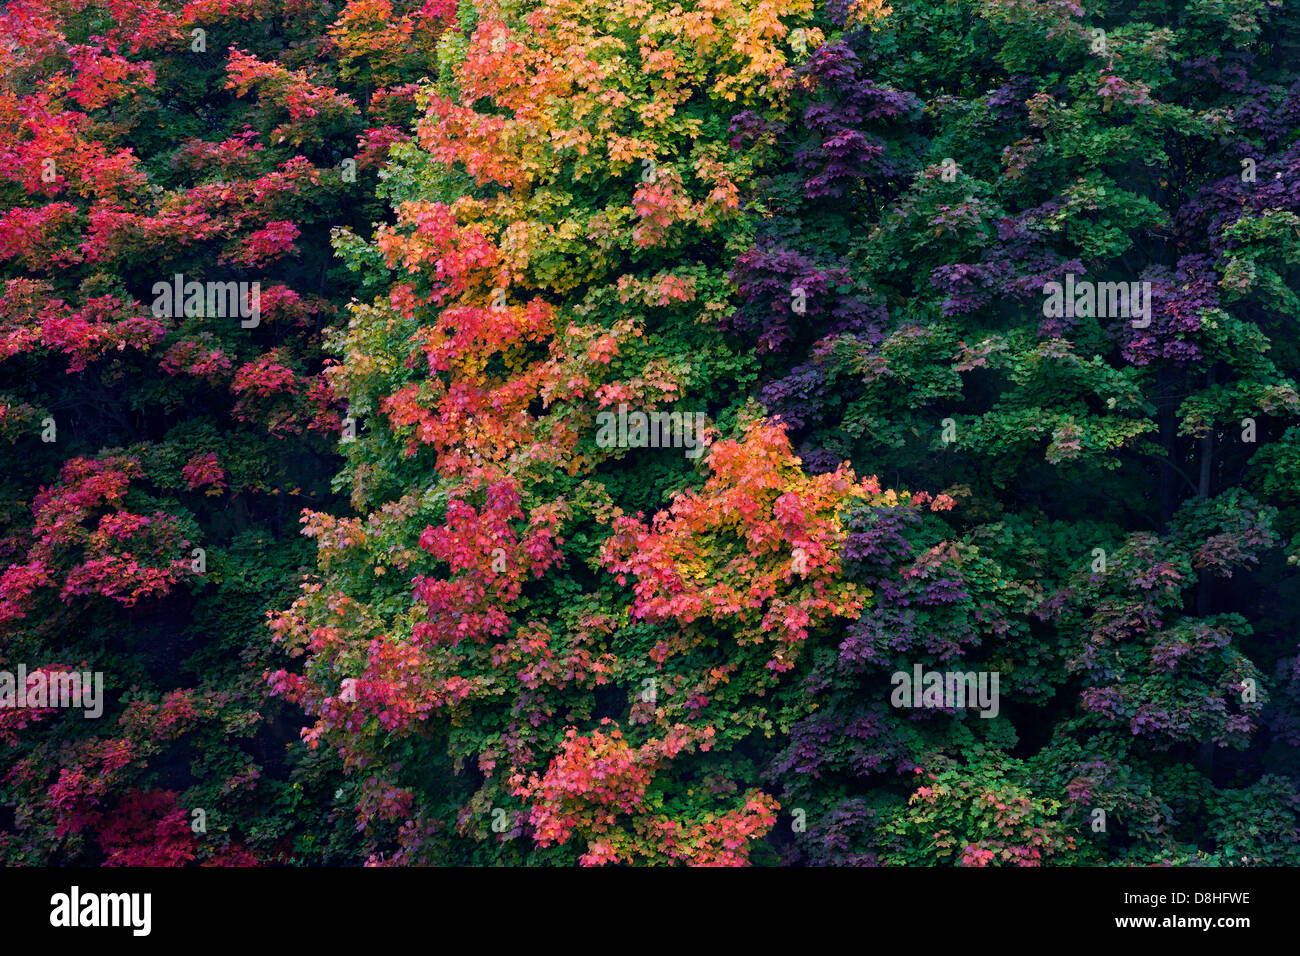 Norvegia alberi di Acero (Acer platanoides), fogliame in variopinti colori autunnali Foto Stock